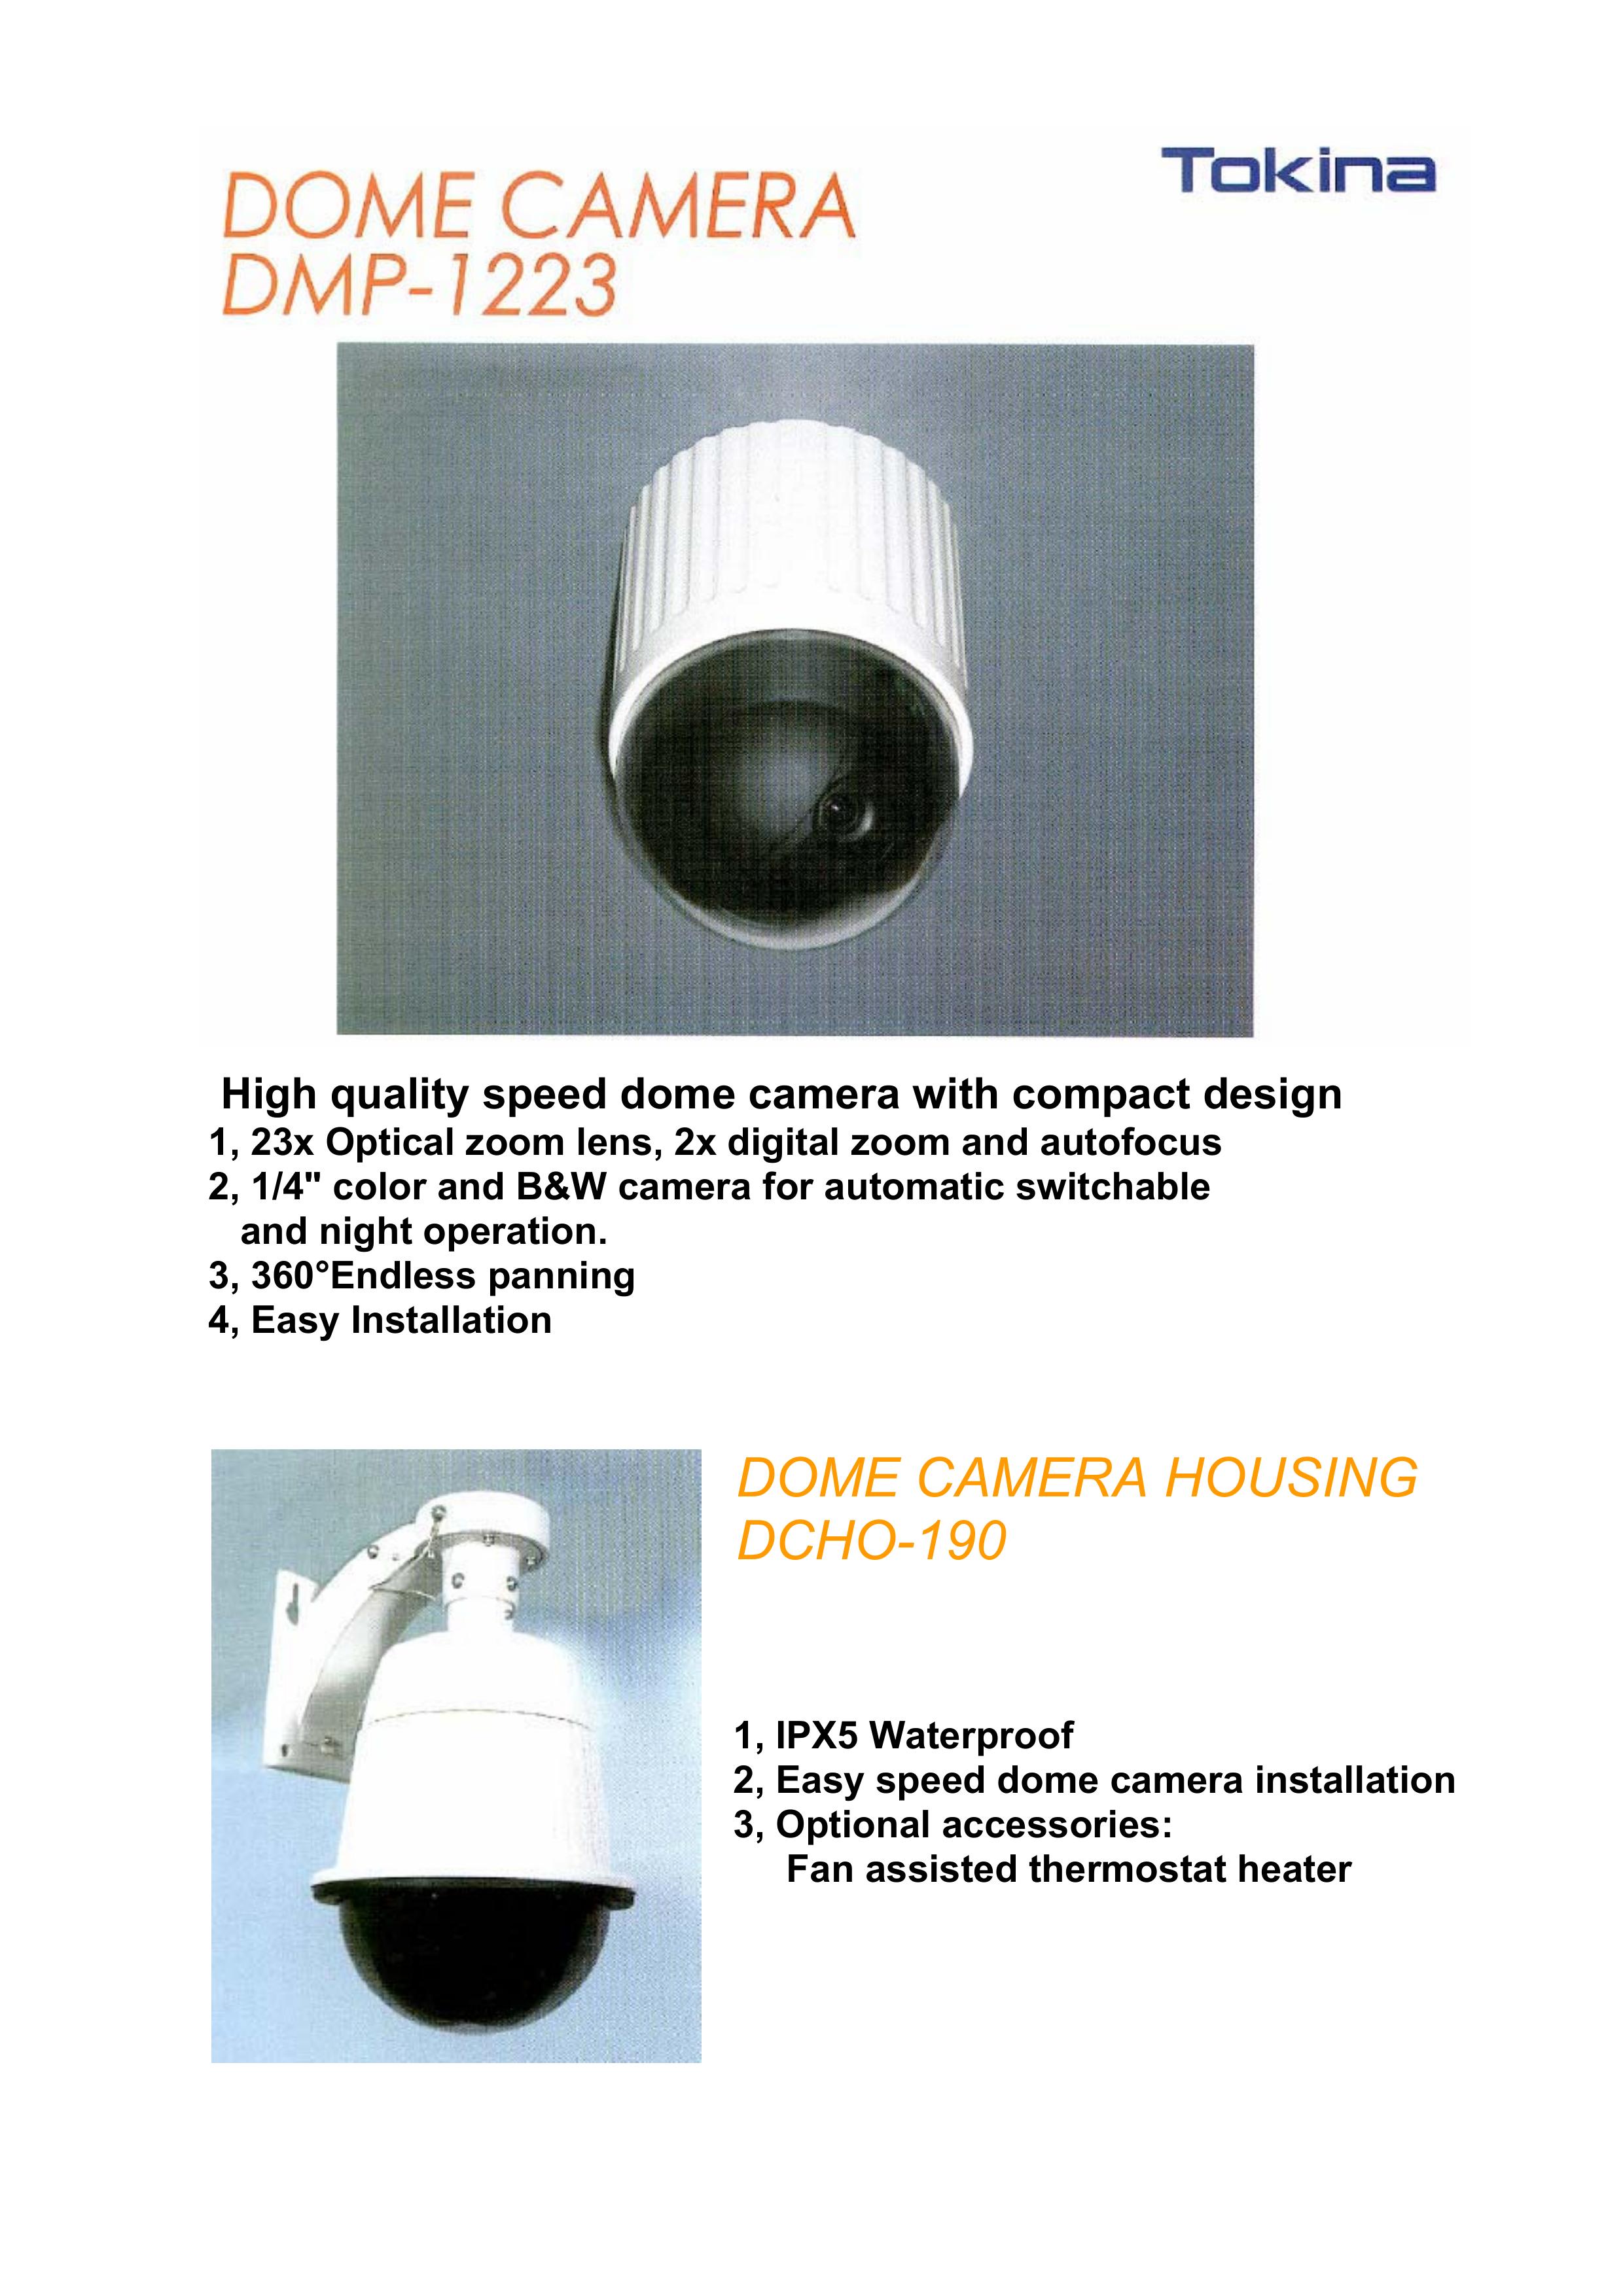 Tokina DMP-1223 Security Camera User Manual